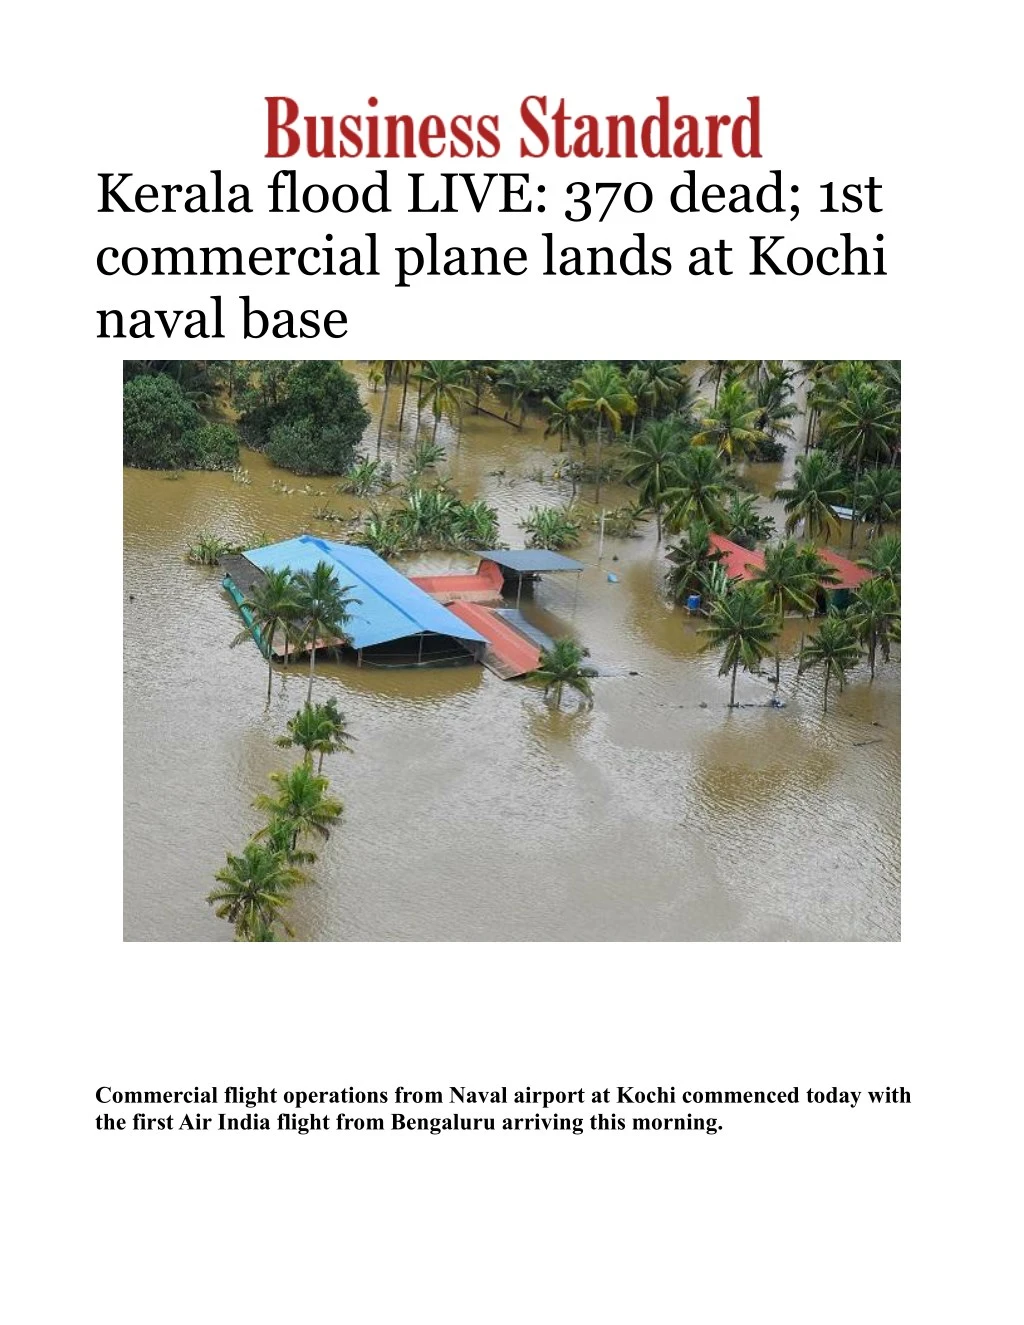 kerala flood case study ppt